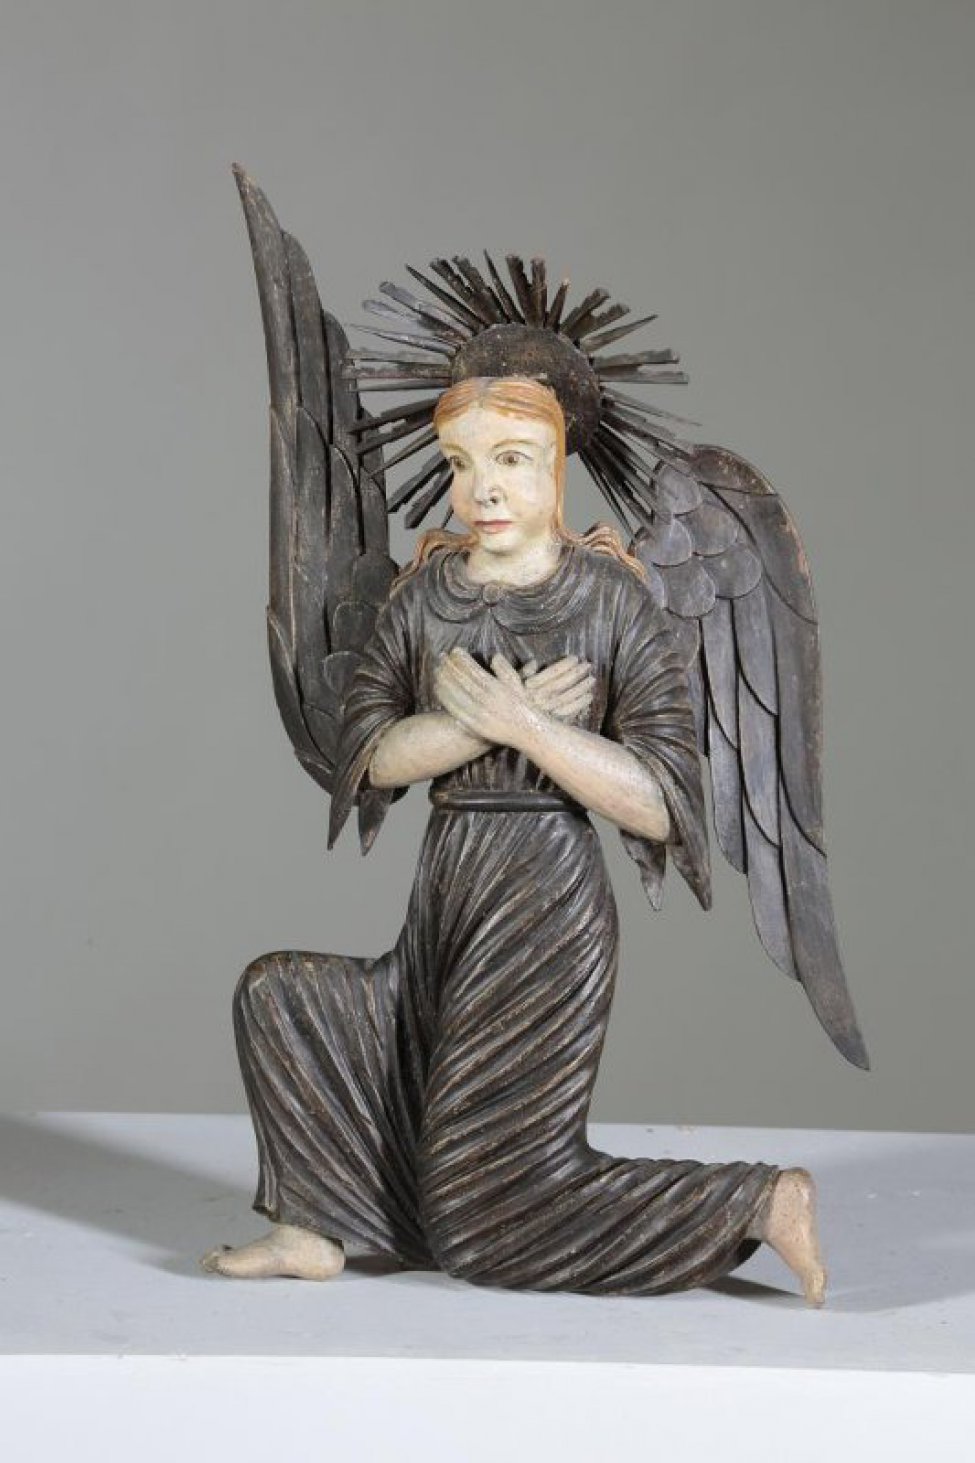 Ангел стоит в верхнем ряду. Изображен со скрещенными на груди руками, в одежде с короткими до локтей рукавами, стоящим по направлению к Саваофу, на левом колене и полусогнутой правой ноге; грудь и голова ангела изображены фронтально; правое крыло имеет взмах вверх.